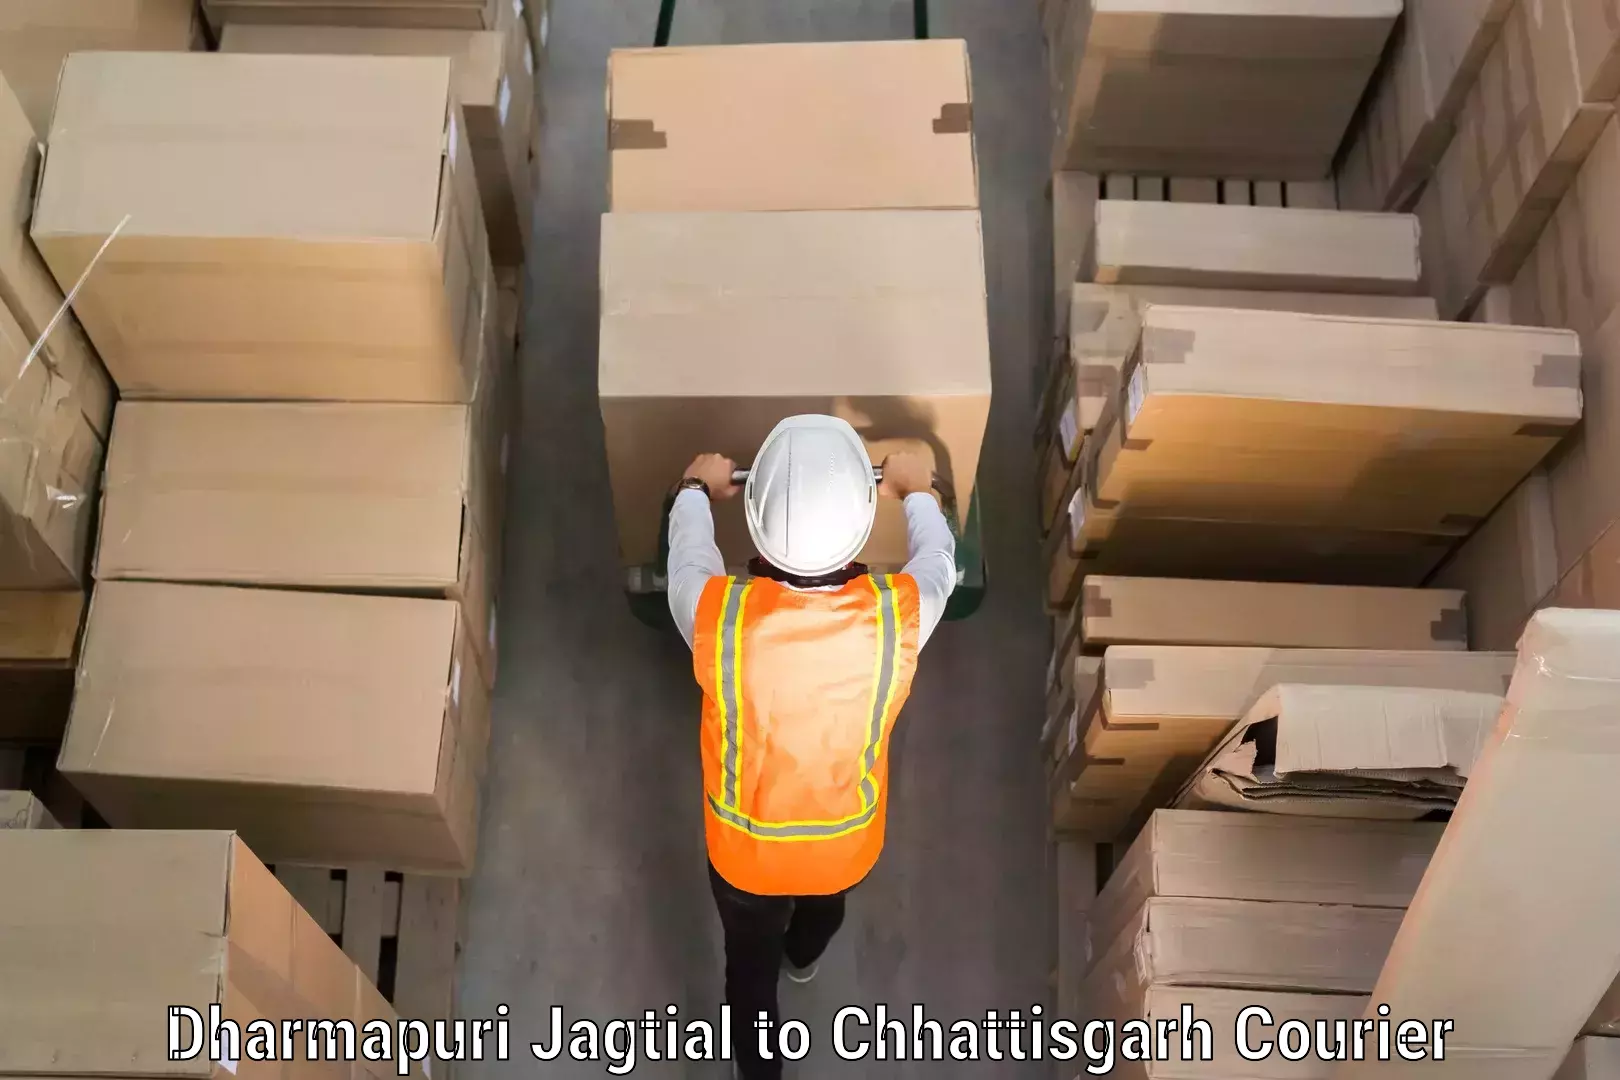 Luggage delivery app Dharmapuri Jagtial to Bastar